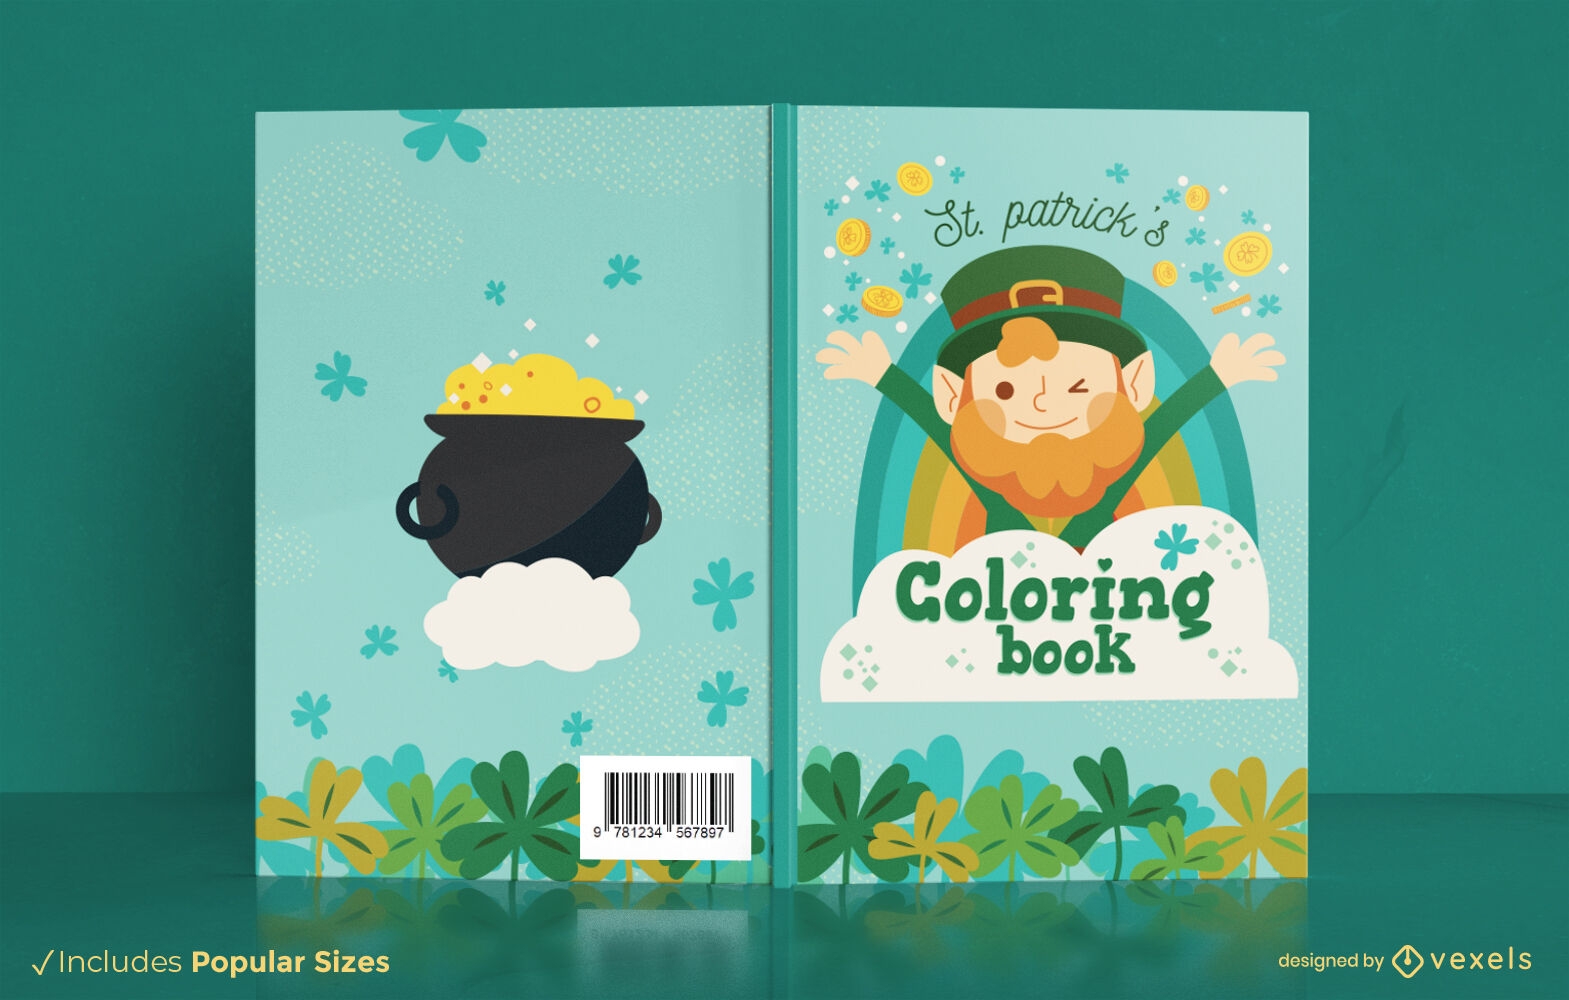 Diseño de portada de libro para colorear de St Patrick